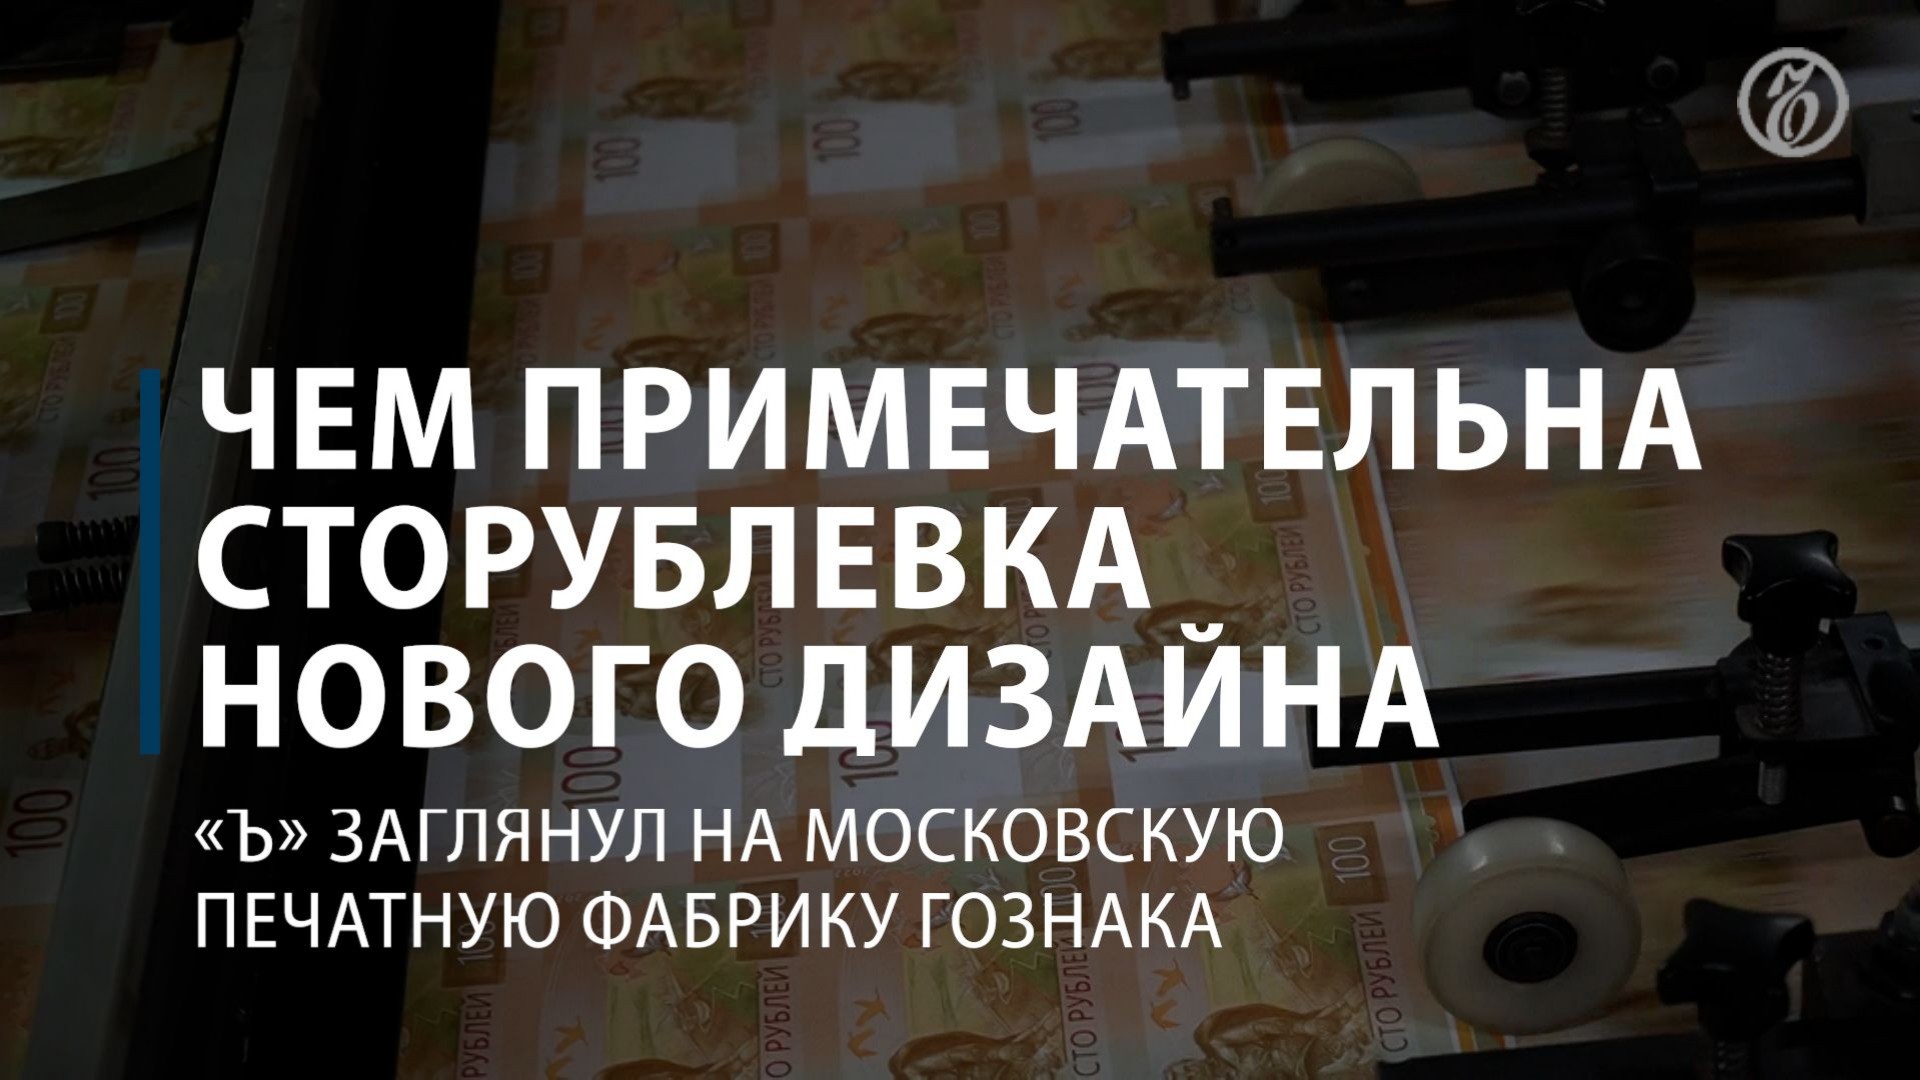 Как Гознак печатает деньги на фабрике в Москве